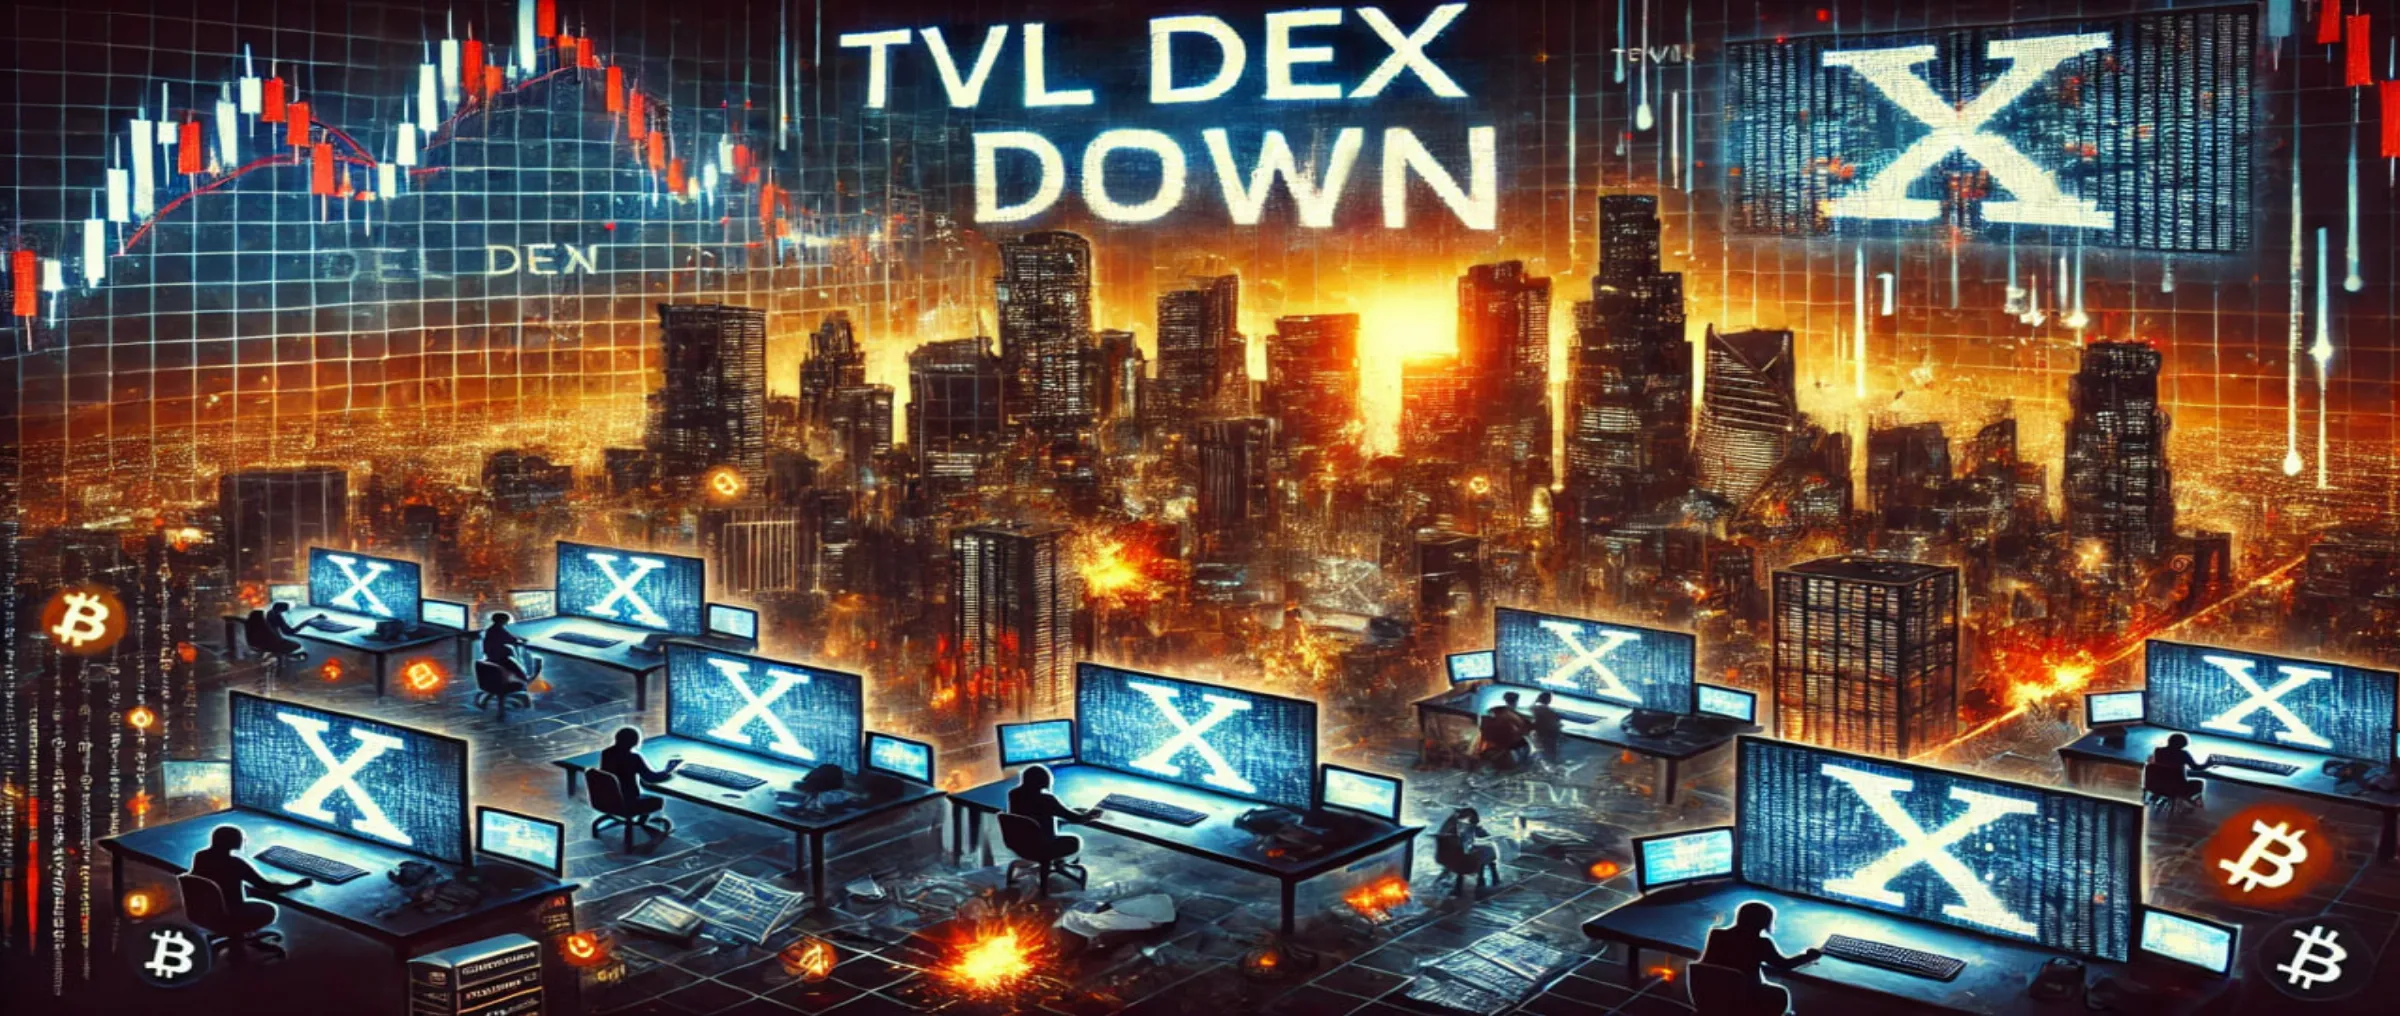 TVL DEX dropped sharply last week